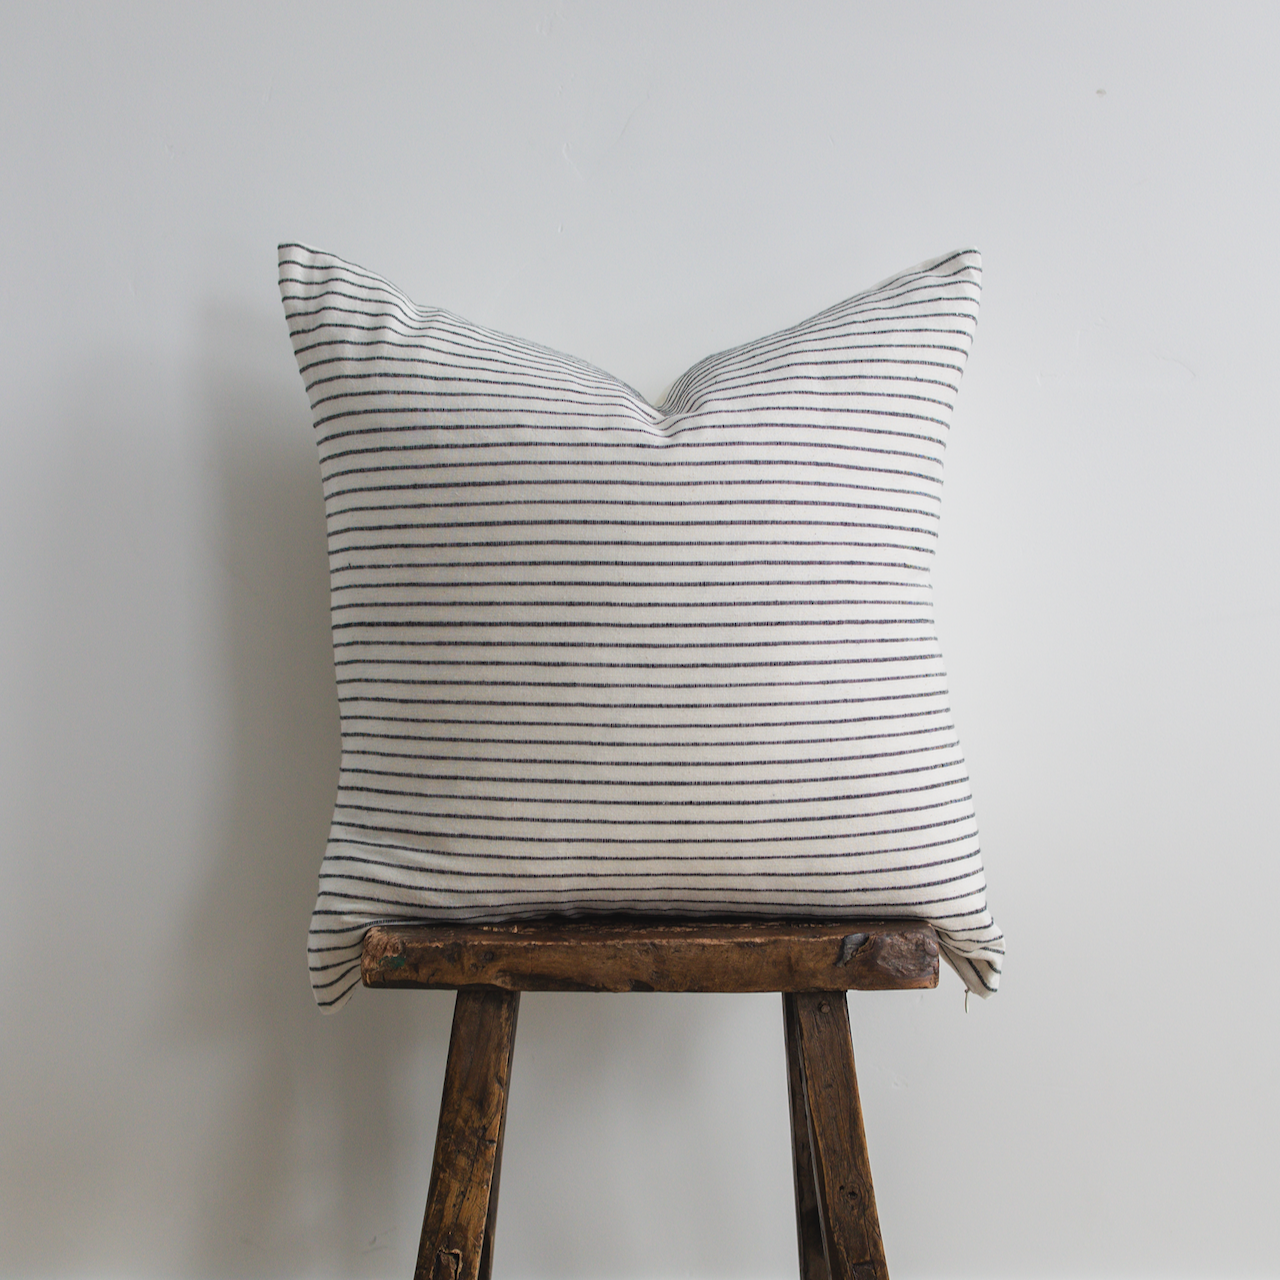 Square Pillow Cover - Black Woven Stripe No.2